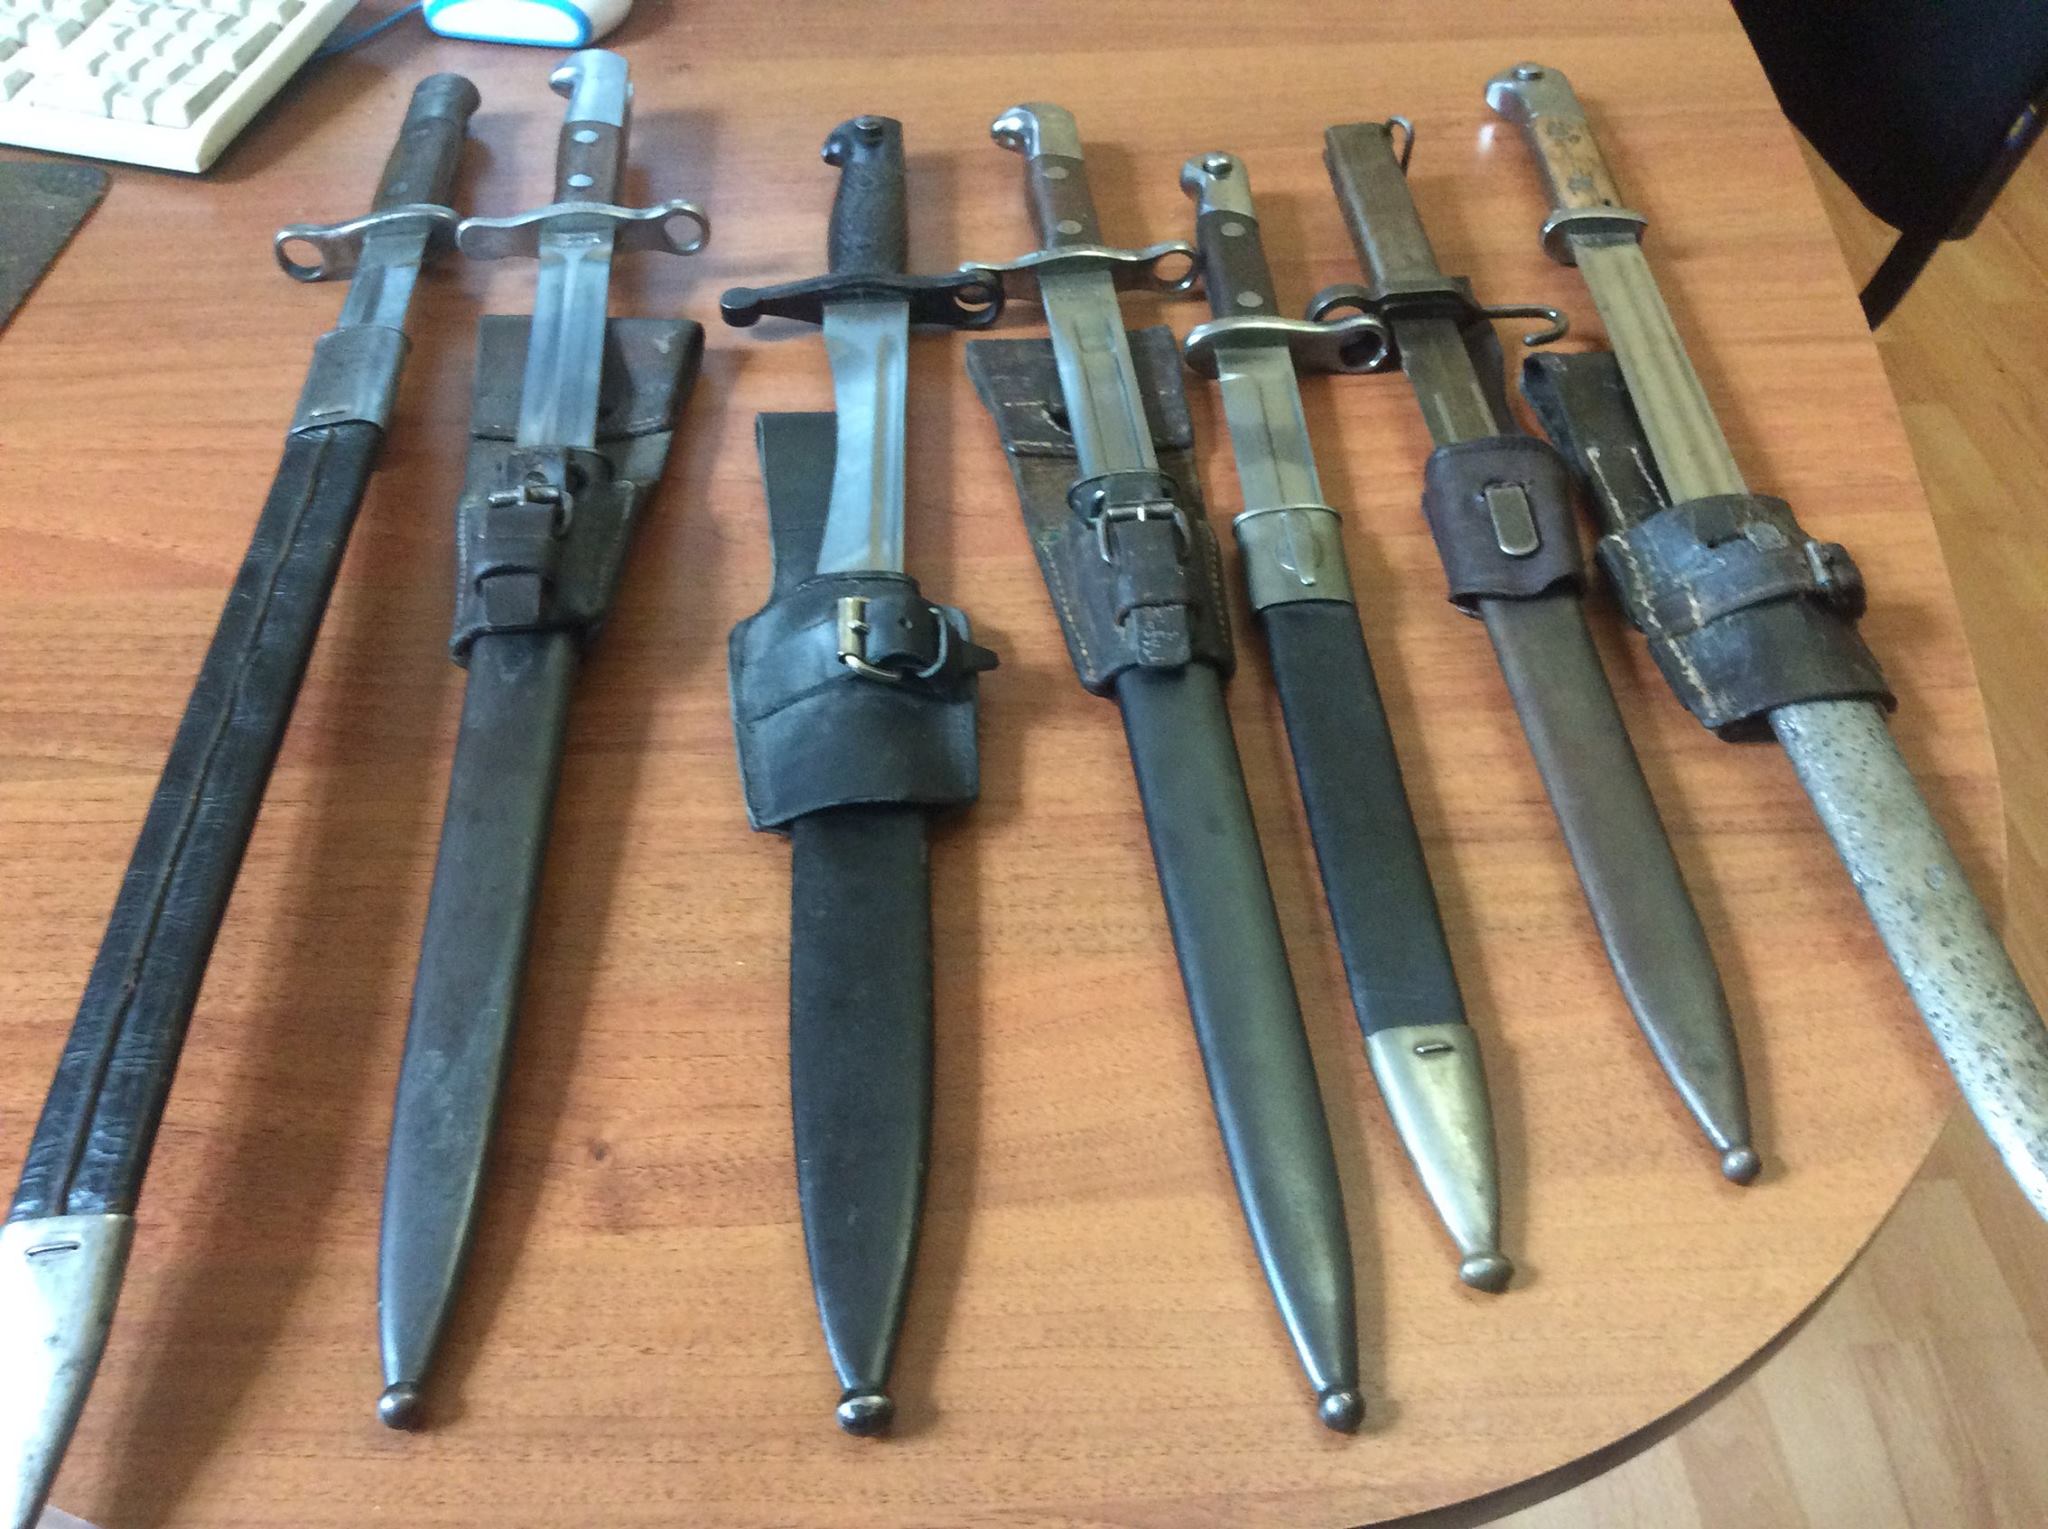 Сейчас на Закарпатье, как и по всей Украине продолжается месячник добровольной сдачи оружия. Этим воспользовался 50-летний мукачевец, принеся в полицию холодное оружие: семь штык-ножей.

